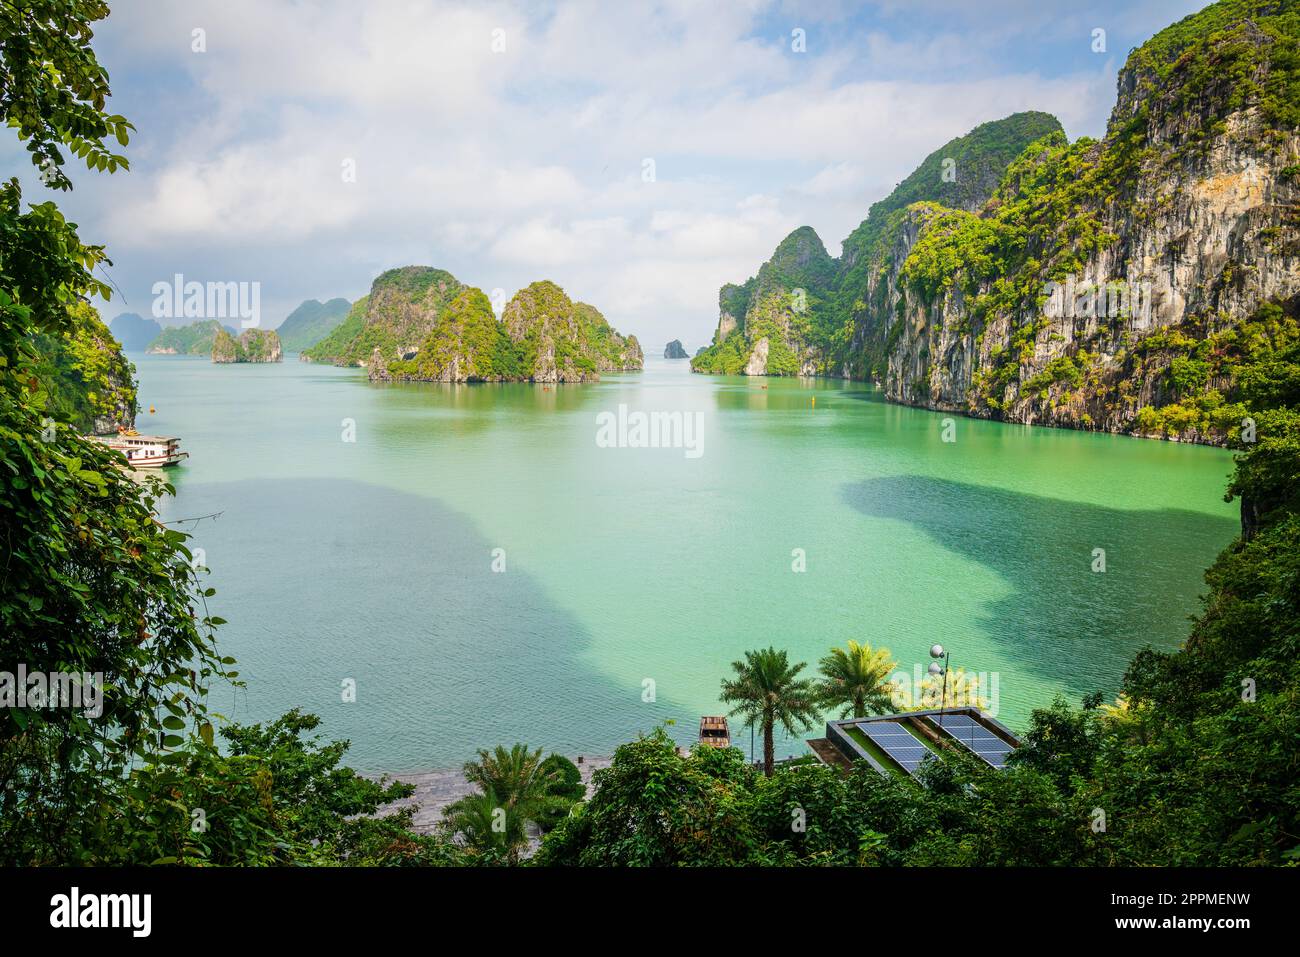 Vista panoramica delle isole di ha Long Bay dall'ingresso alla grotta Thien Cung in Vietnam Foto Stock